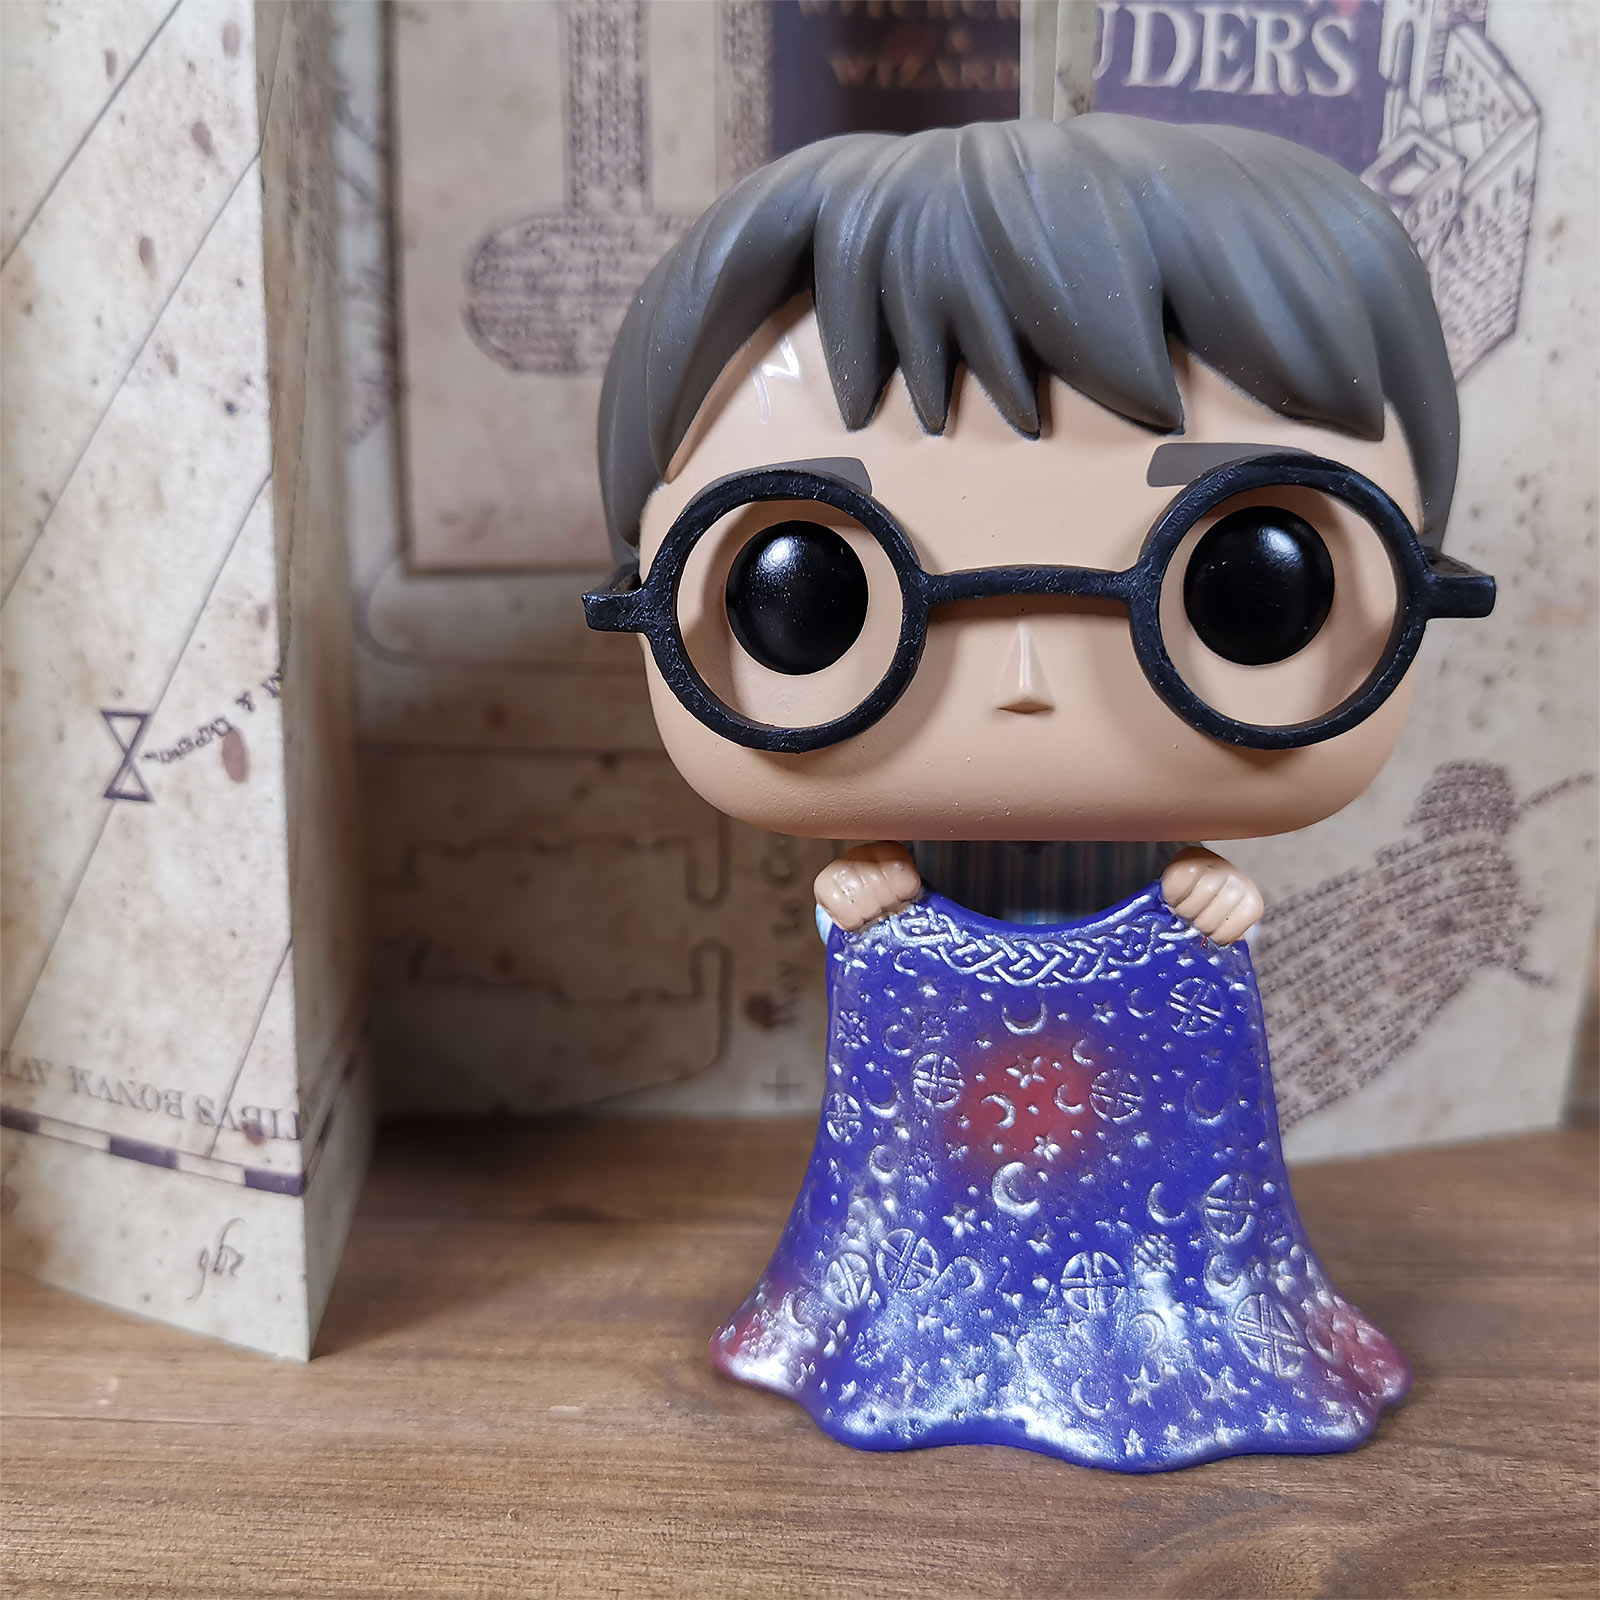 Harry Potter avec Cape d'Invisibilité Figurine Funko Pop